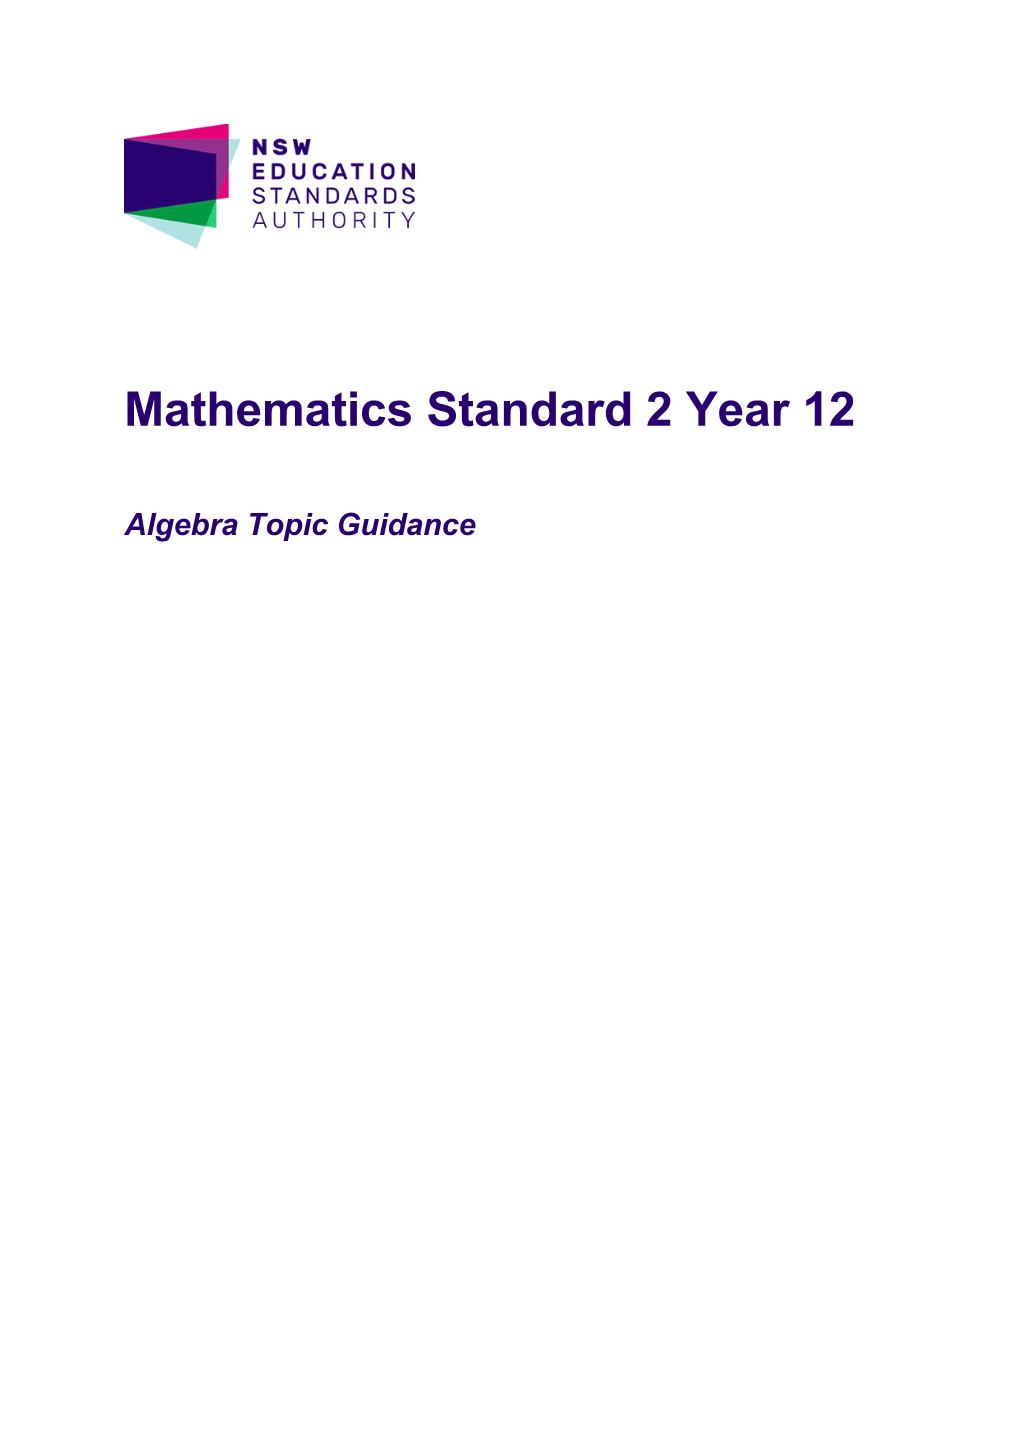 Year 12 Mathematics Standard 2 Topic Guidance: Algebra